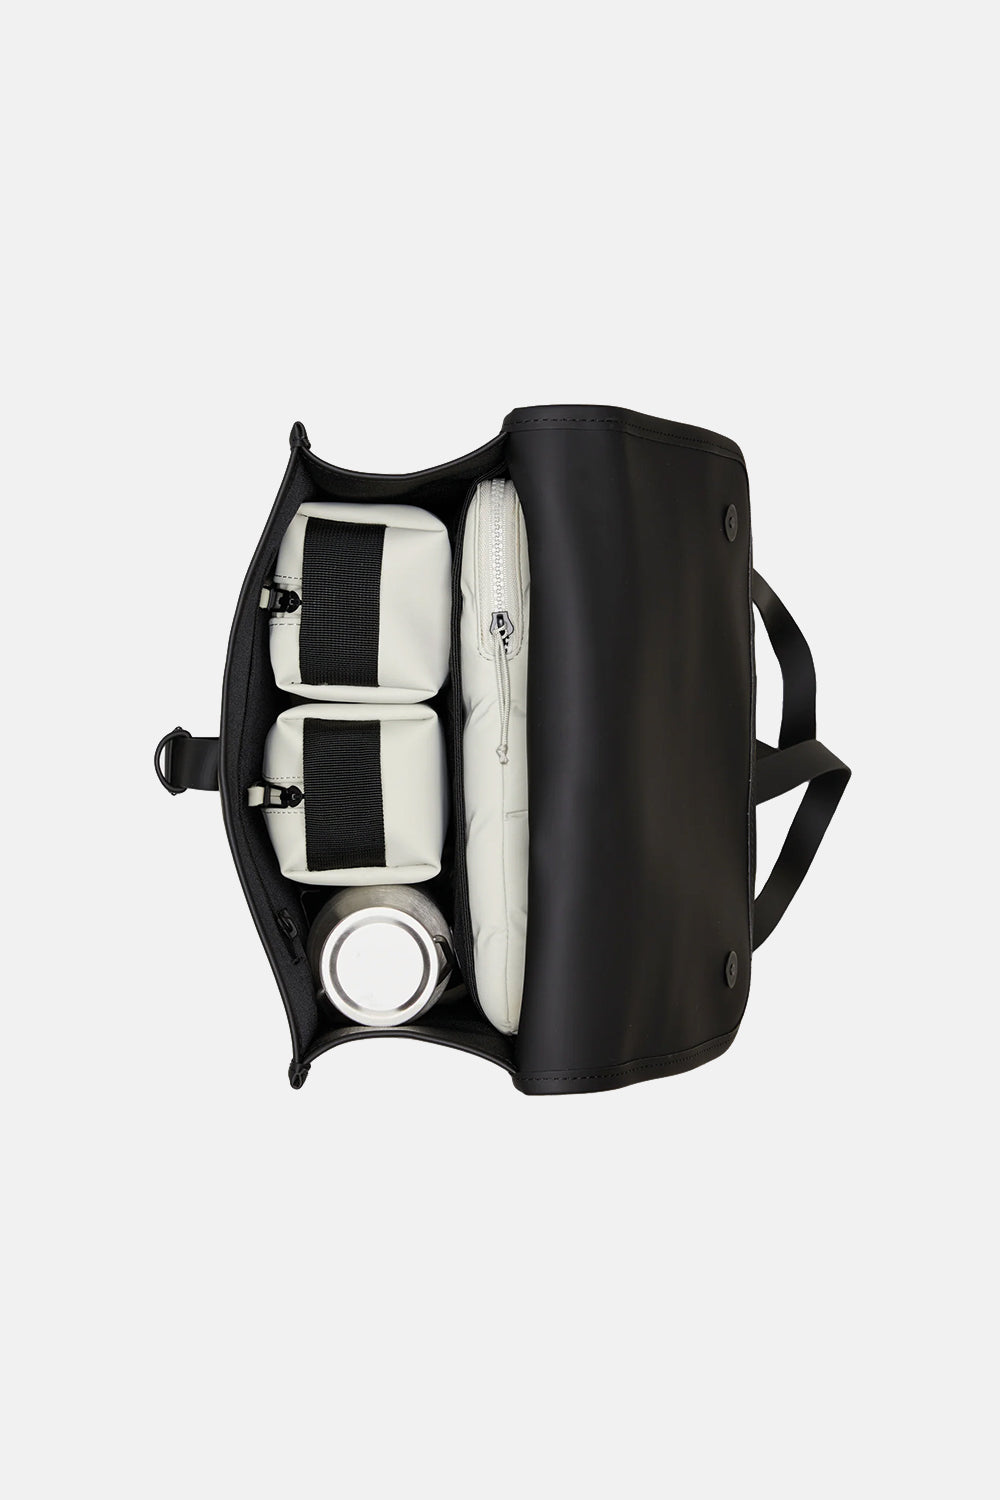 Rains Waterproof Backpack W3 (Black)